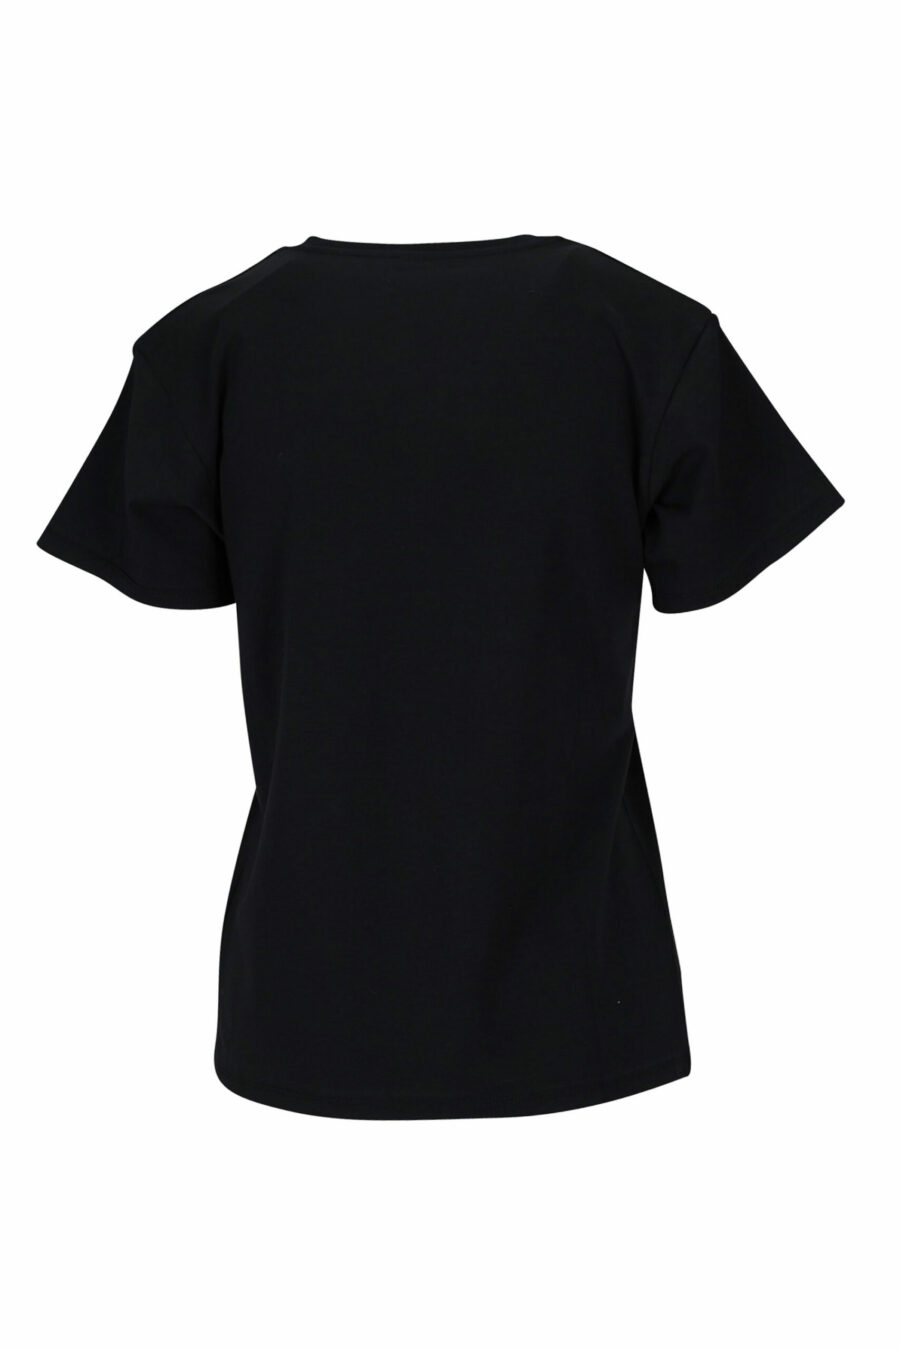 Camiseta negra con cuello en "v" y logo en cinta monocromático - 889316614954 1 scaled